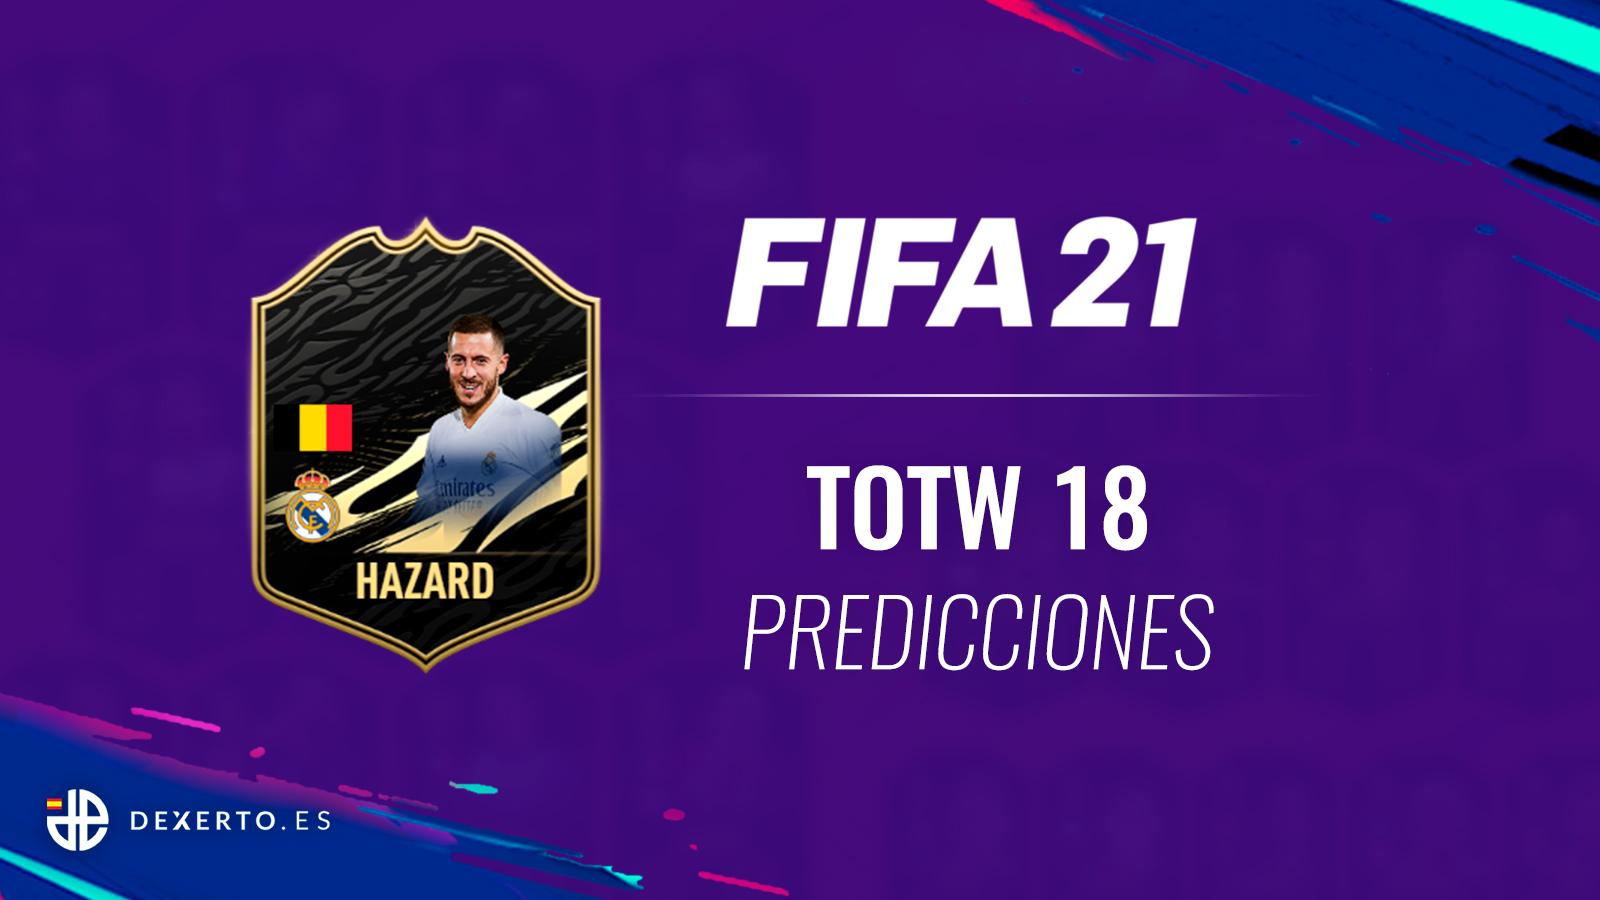 Hazard Predicciones FIFA 21 TOTW 18